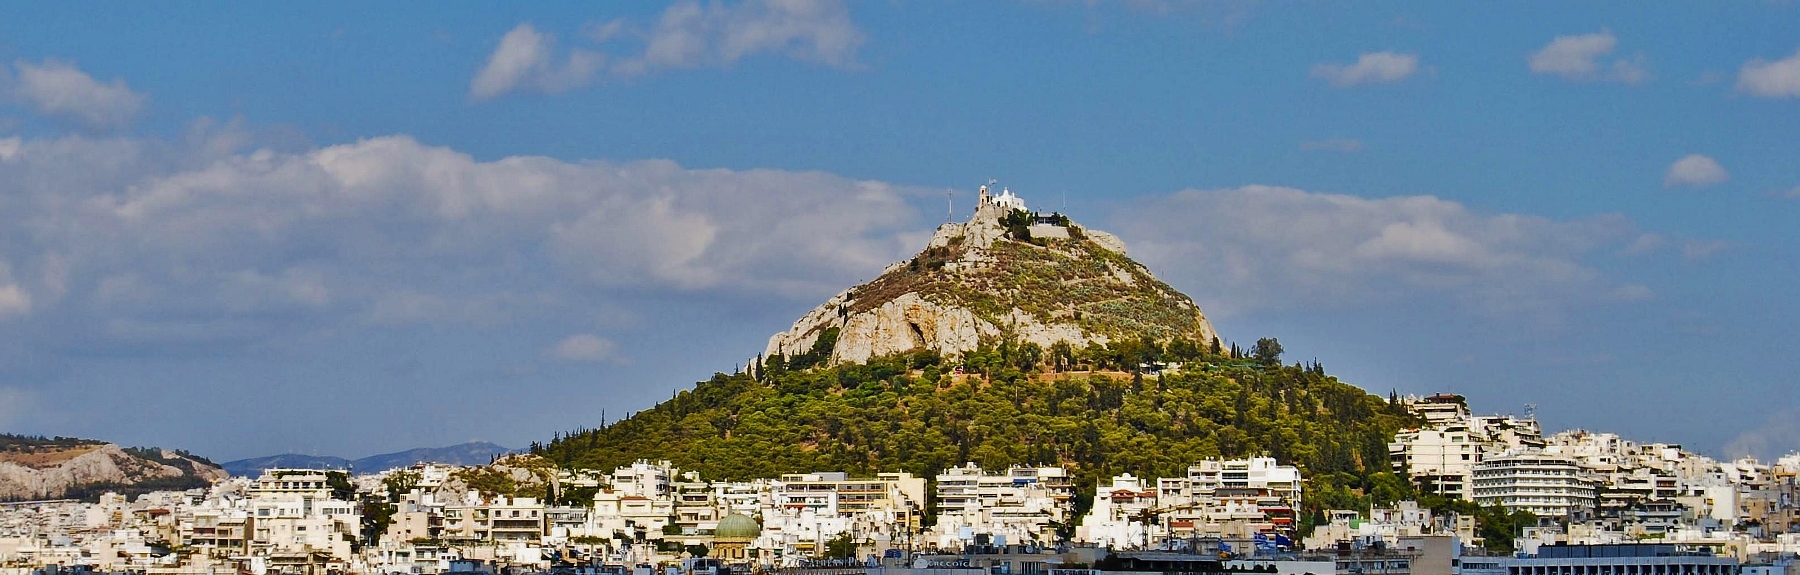 Overnachting in Athene - mount Lykavittos